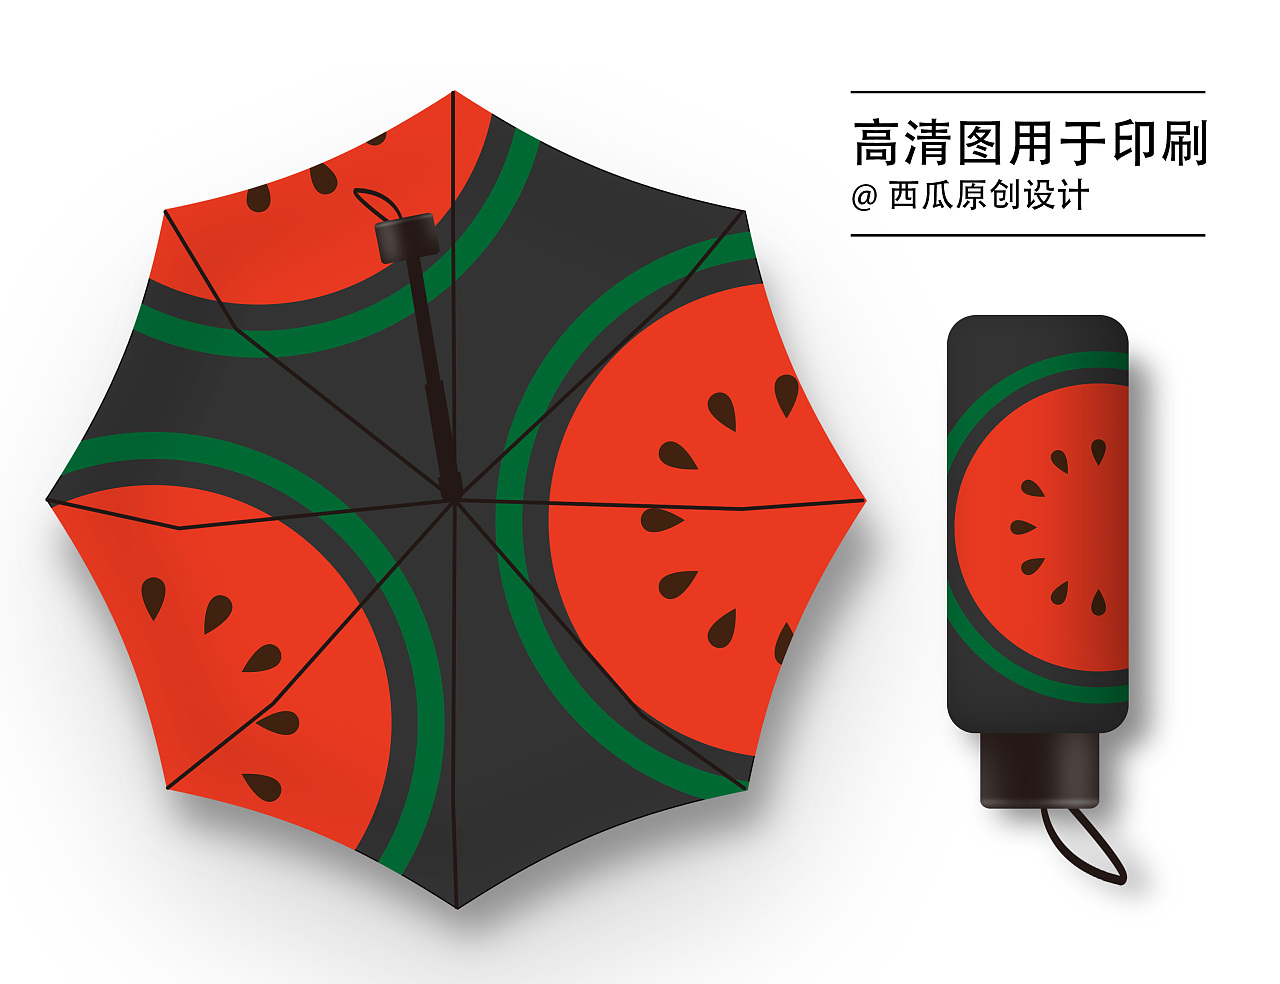 创意日本透明樱花伞 塑料雨伞 广告伞 舞蹈伞 画图伞礼品伞-阿里巴巴